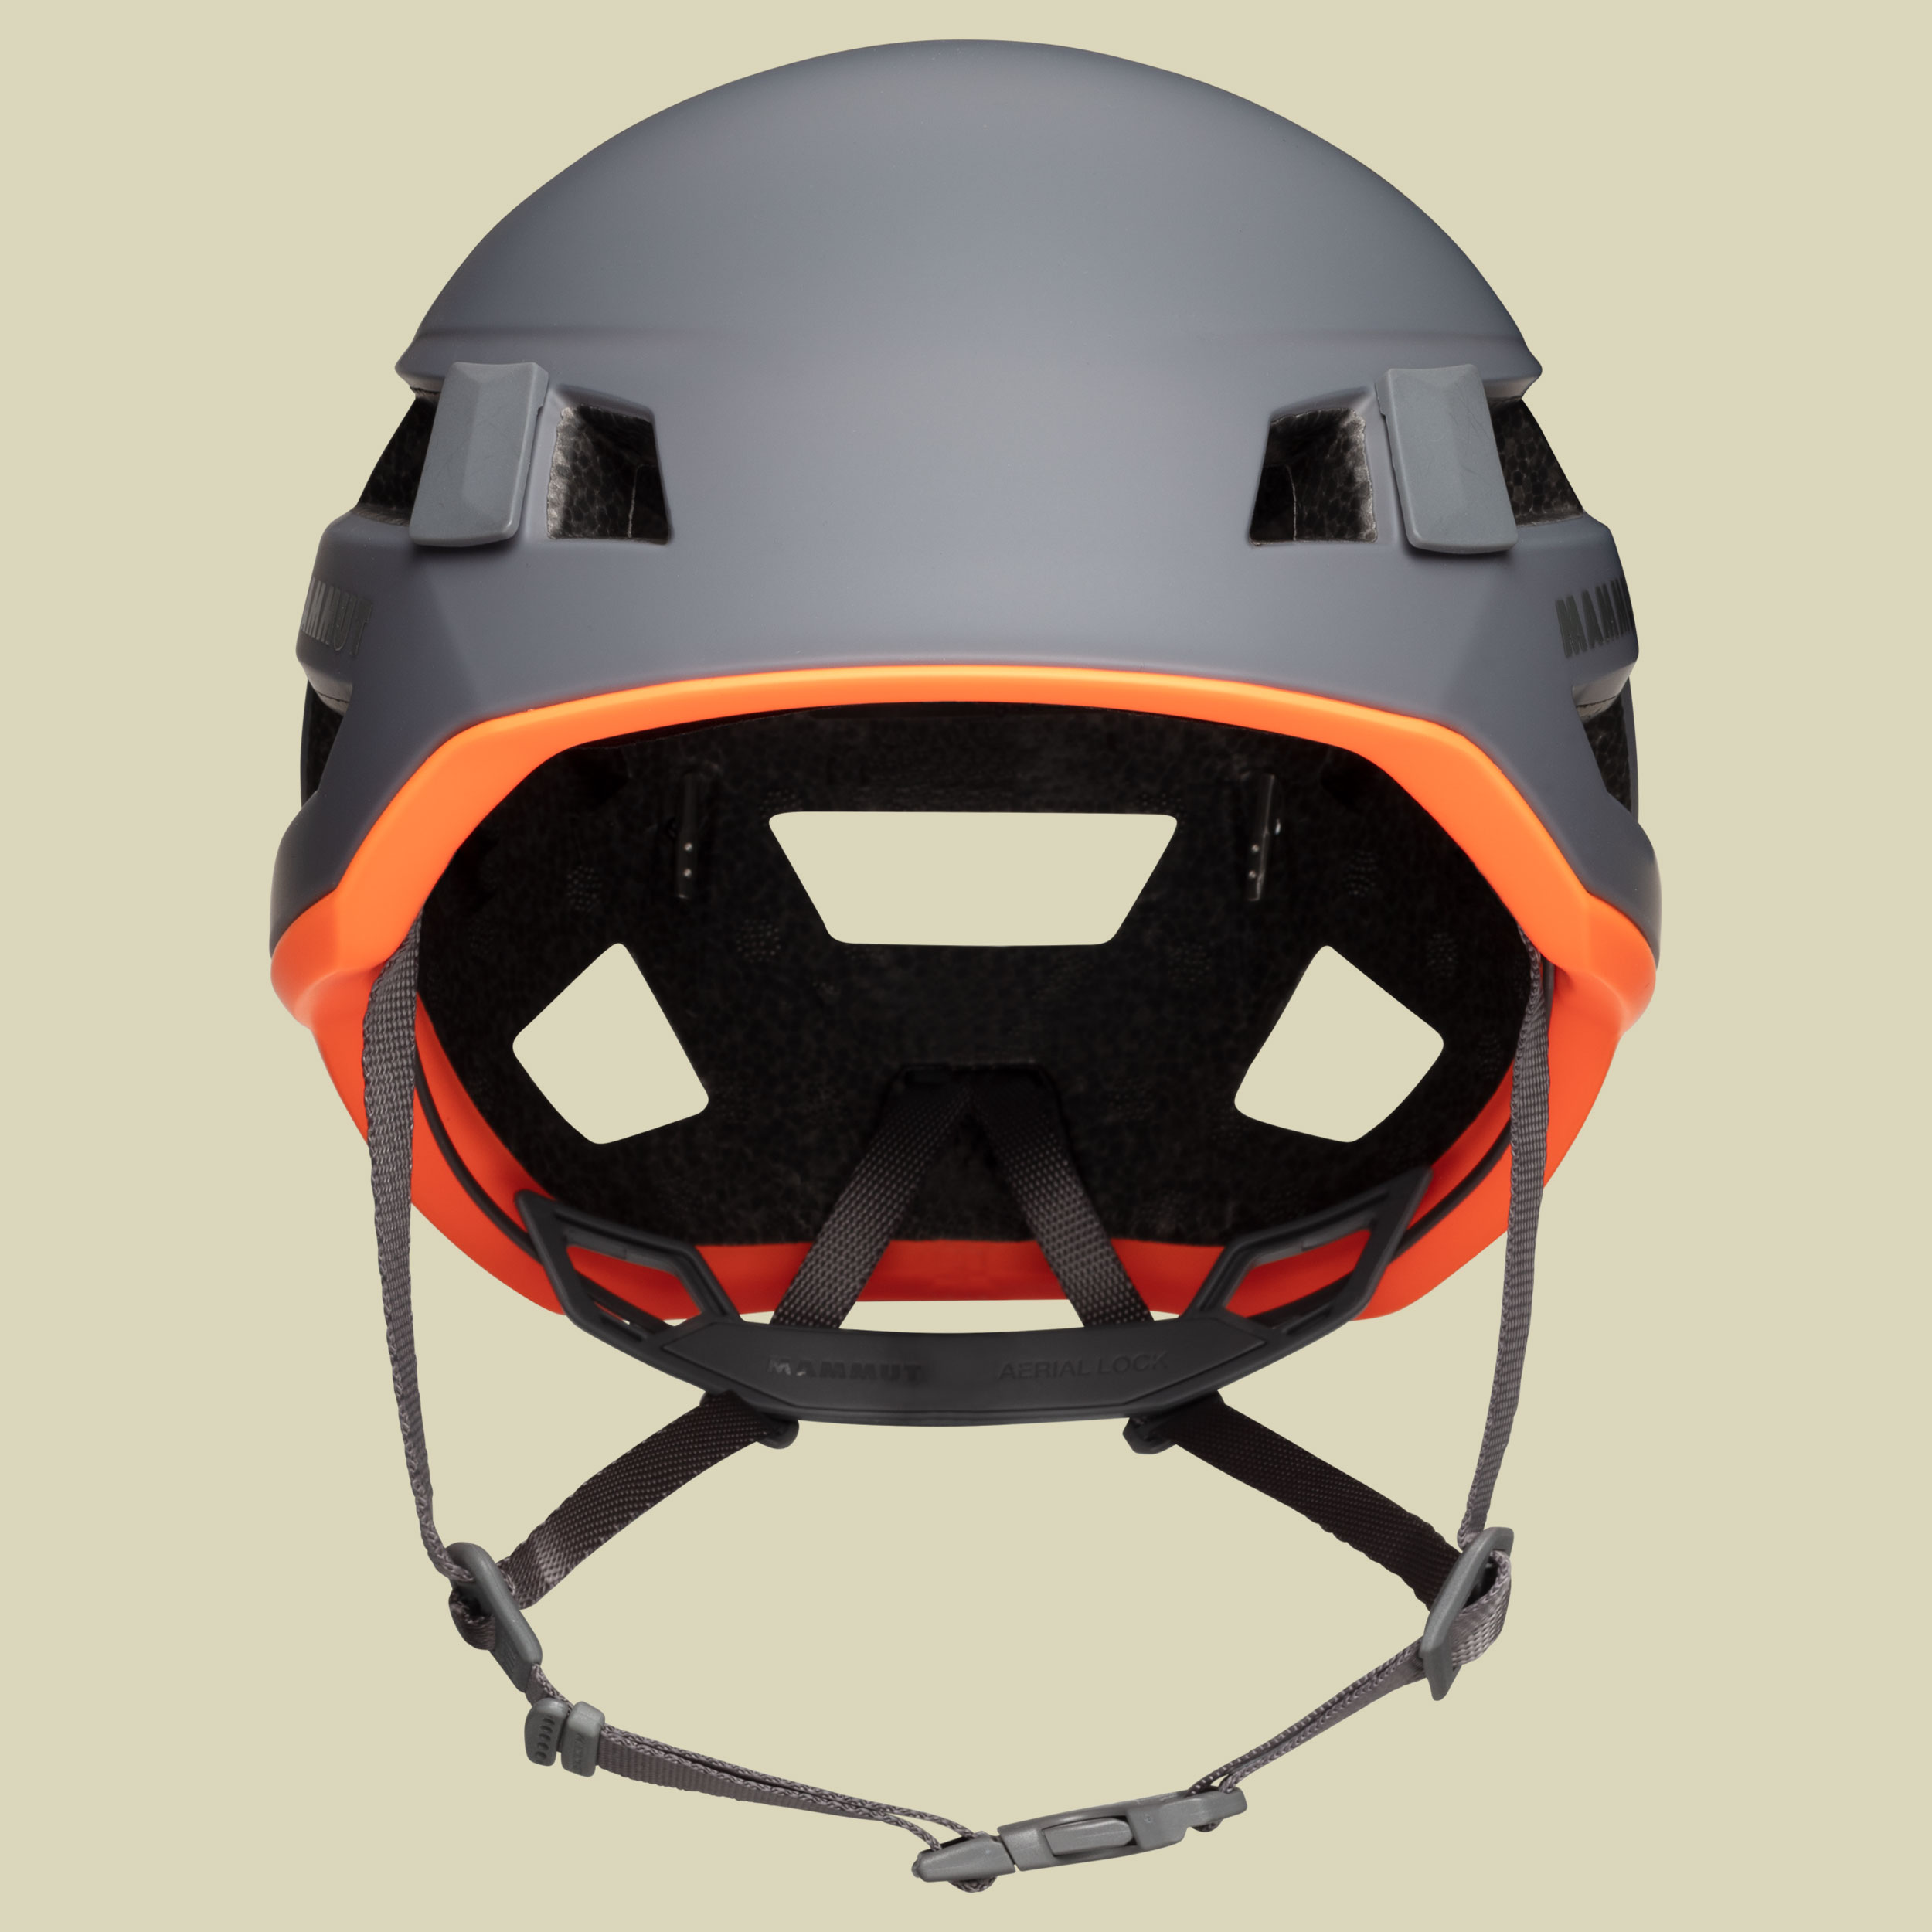 Crag Sender Helmet Größe 52-57 cm Farbe titanium